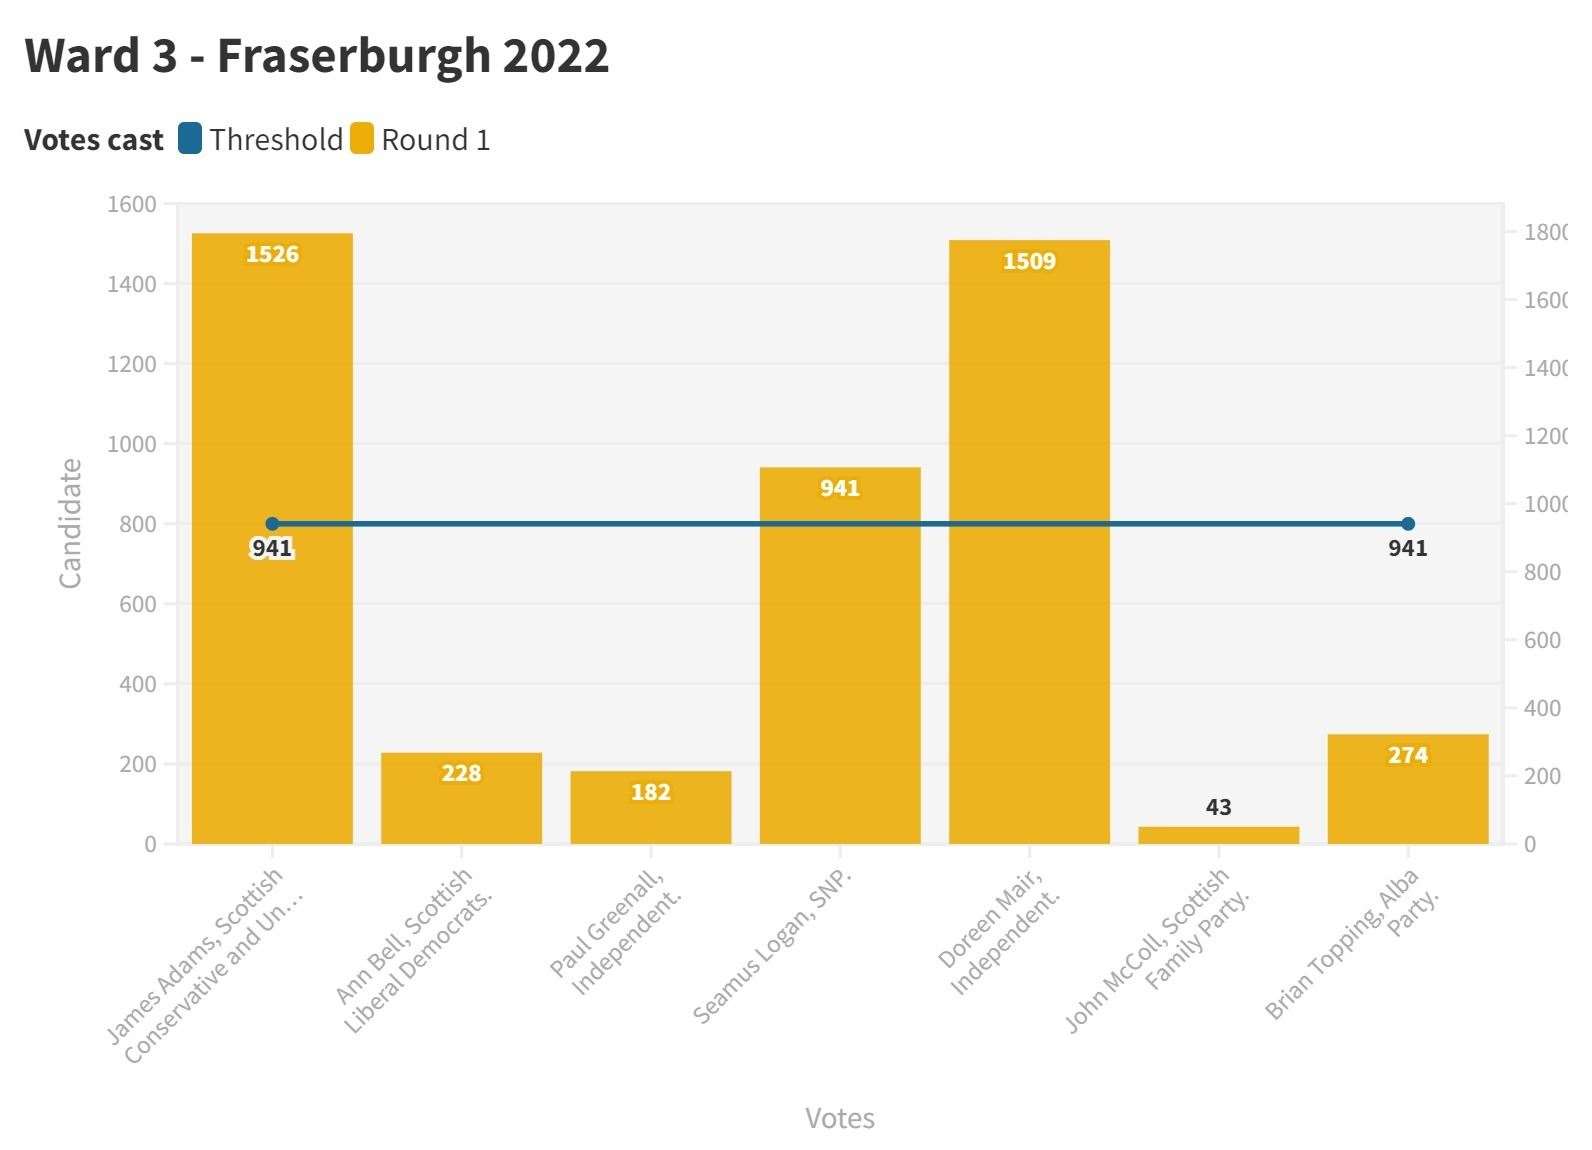 Ward 3 Fraserburgh 2022